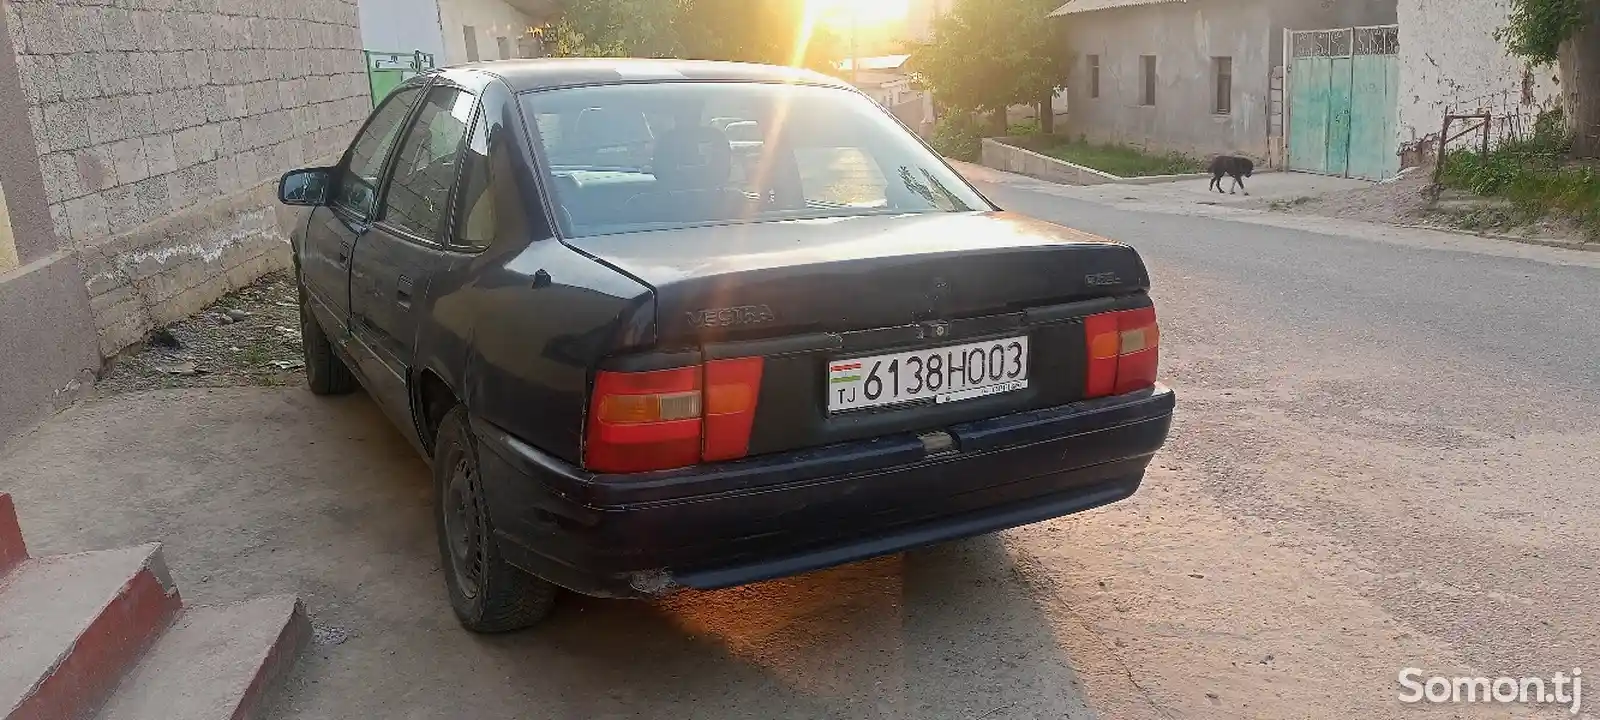 Opel Vectra A, 1992-3